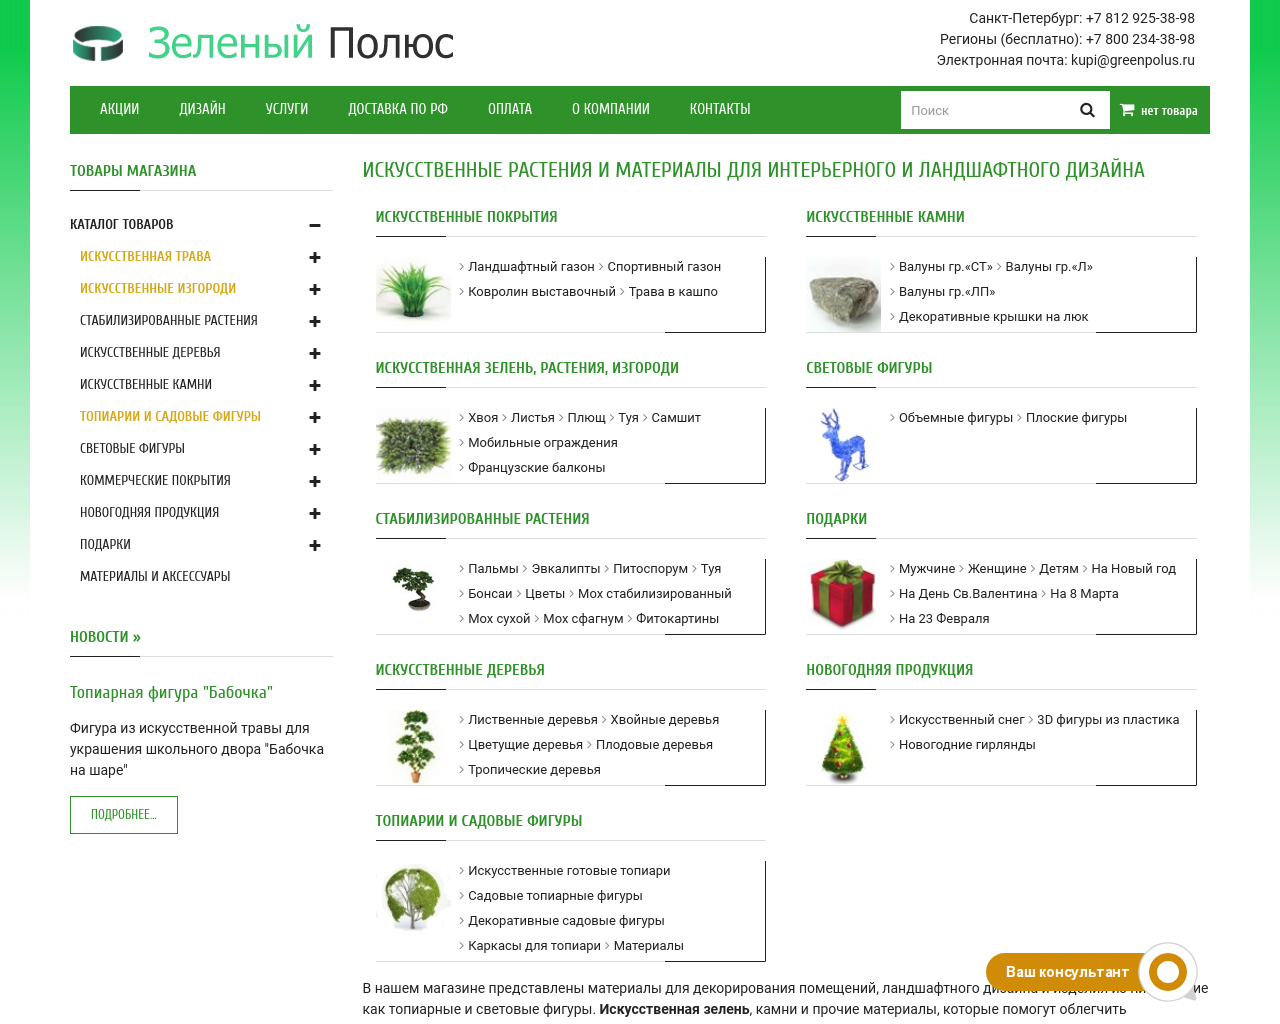 Изображение сайта green-polus.ru в разрешении 1280x1024